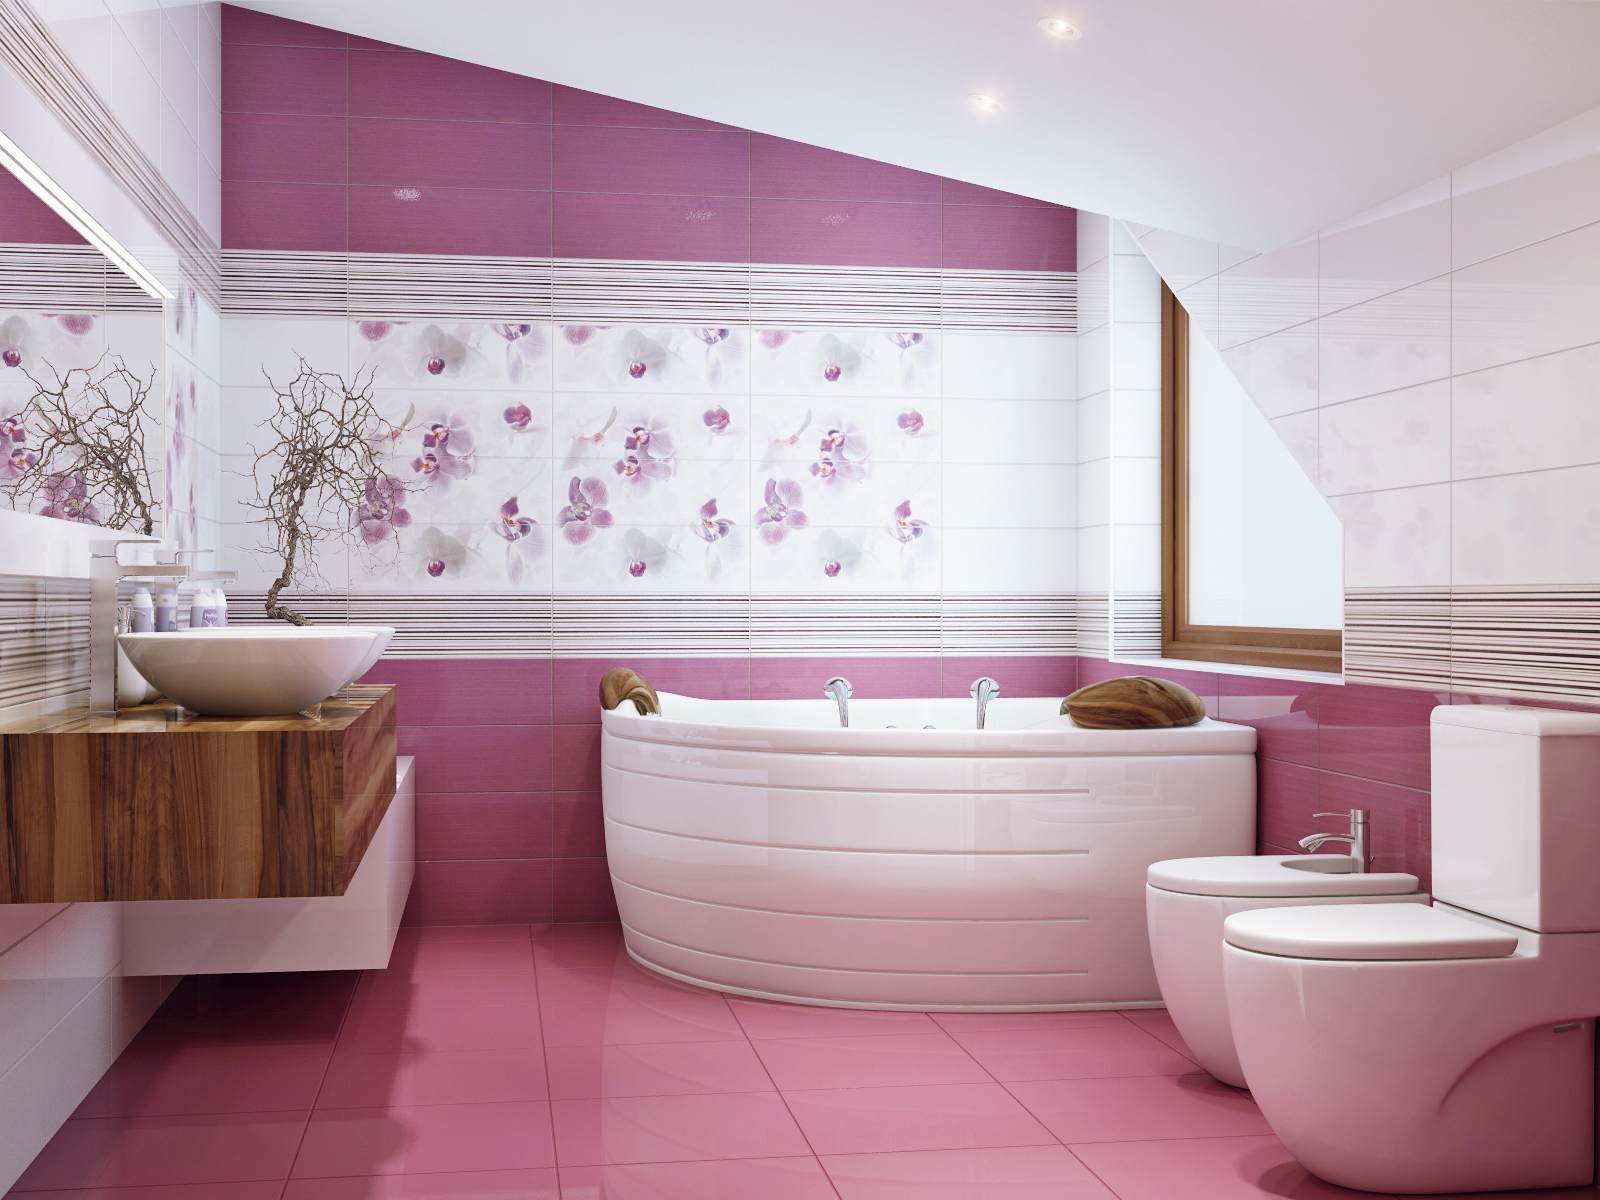 Плитка розовый цвет. Панели ПВХ Кронапласт unique Сакура 2.7. Ванная в розовом цвете. Ванна в розовых тонах. Красивая плитка для ванной комнаты.